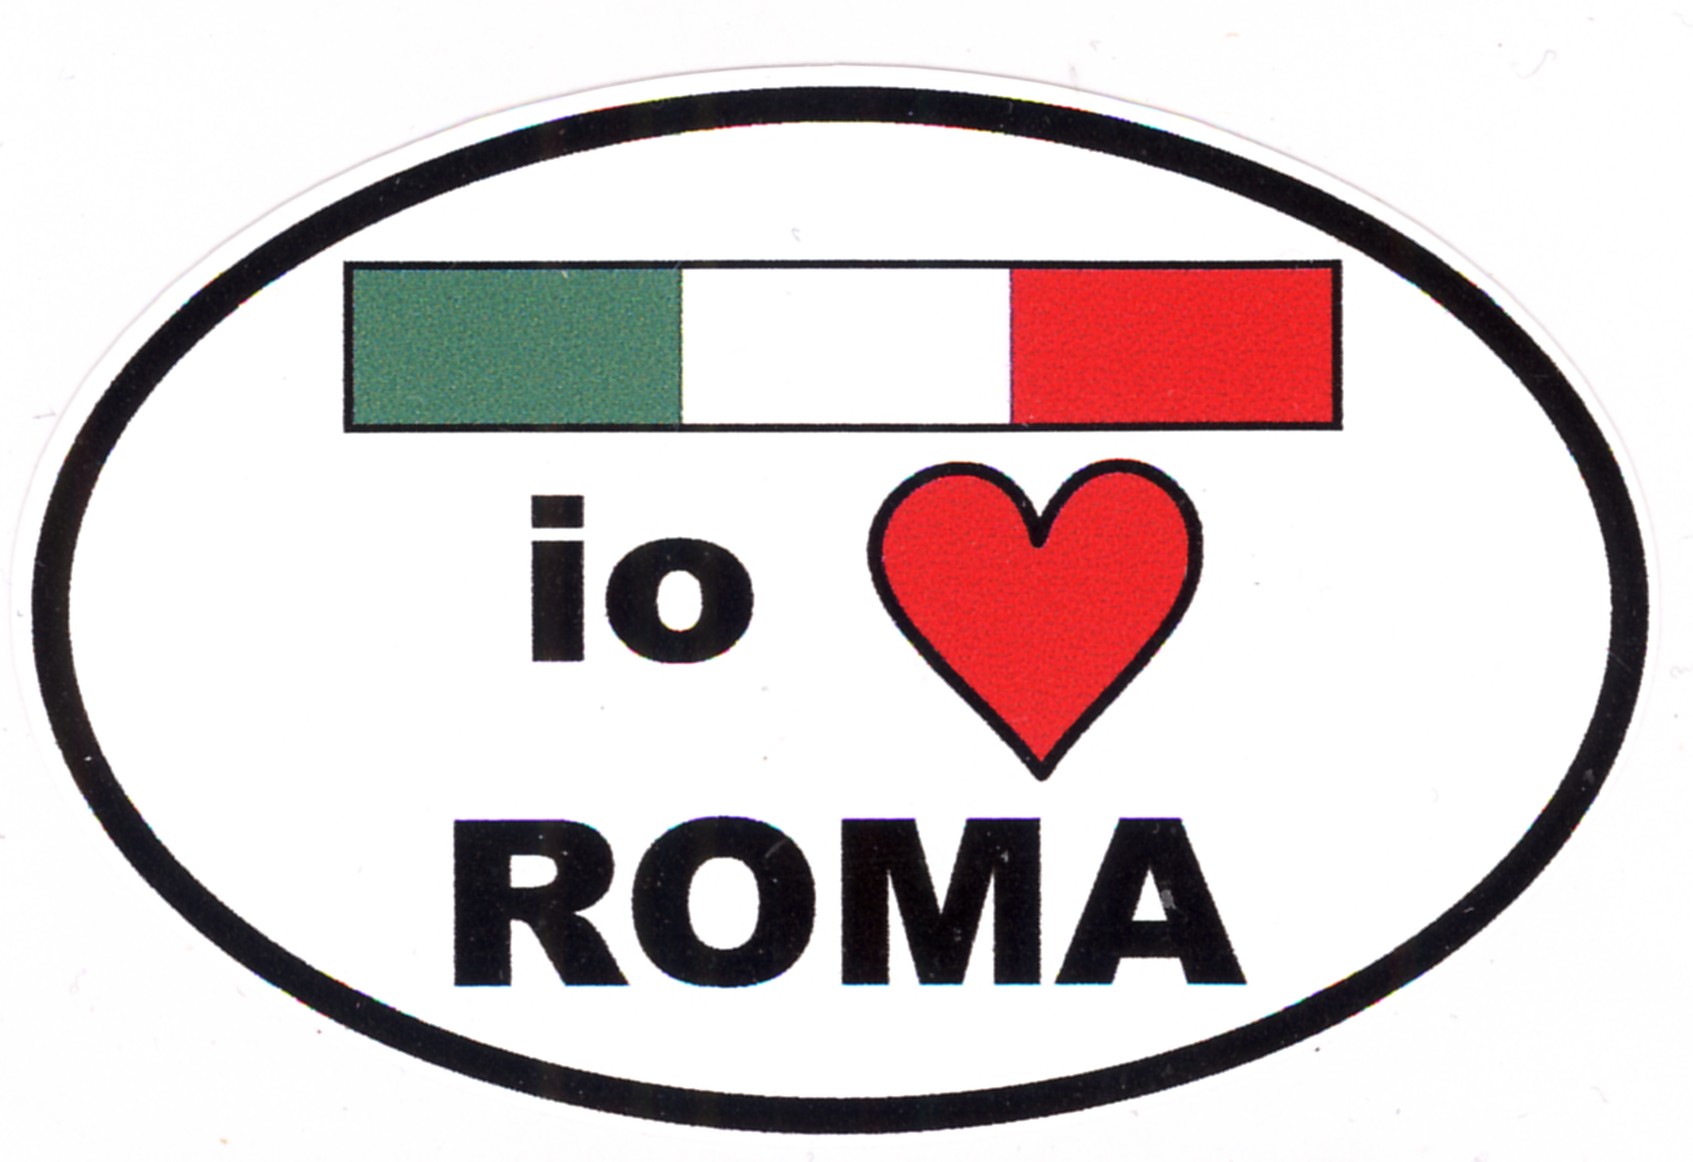 99-08-03-8171 Adesivi Roma Ovale Bandierina Tricolore I Love  CONFEZION.10 Pz.